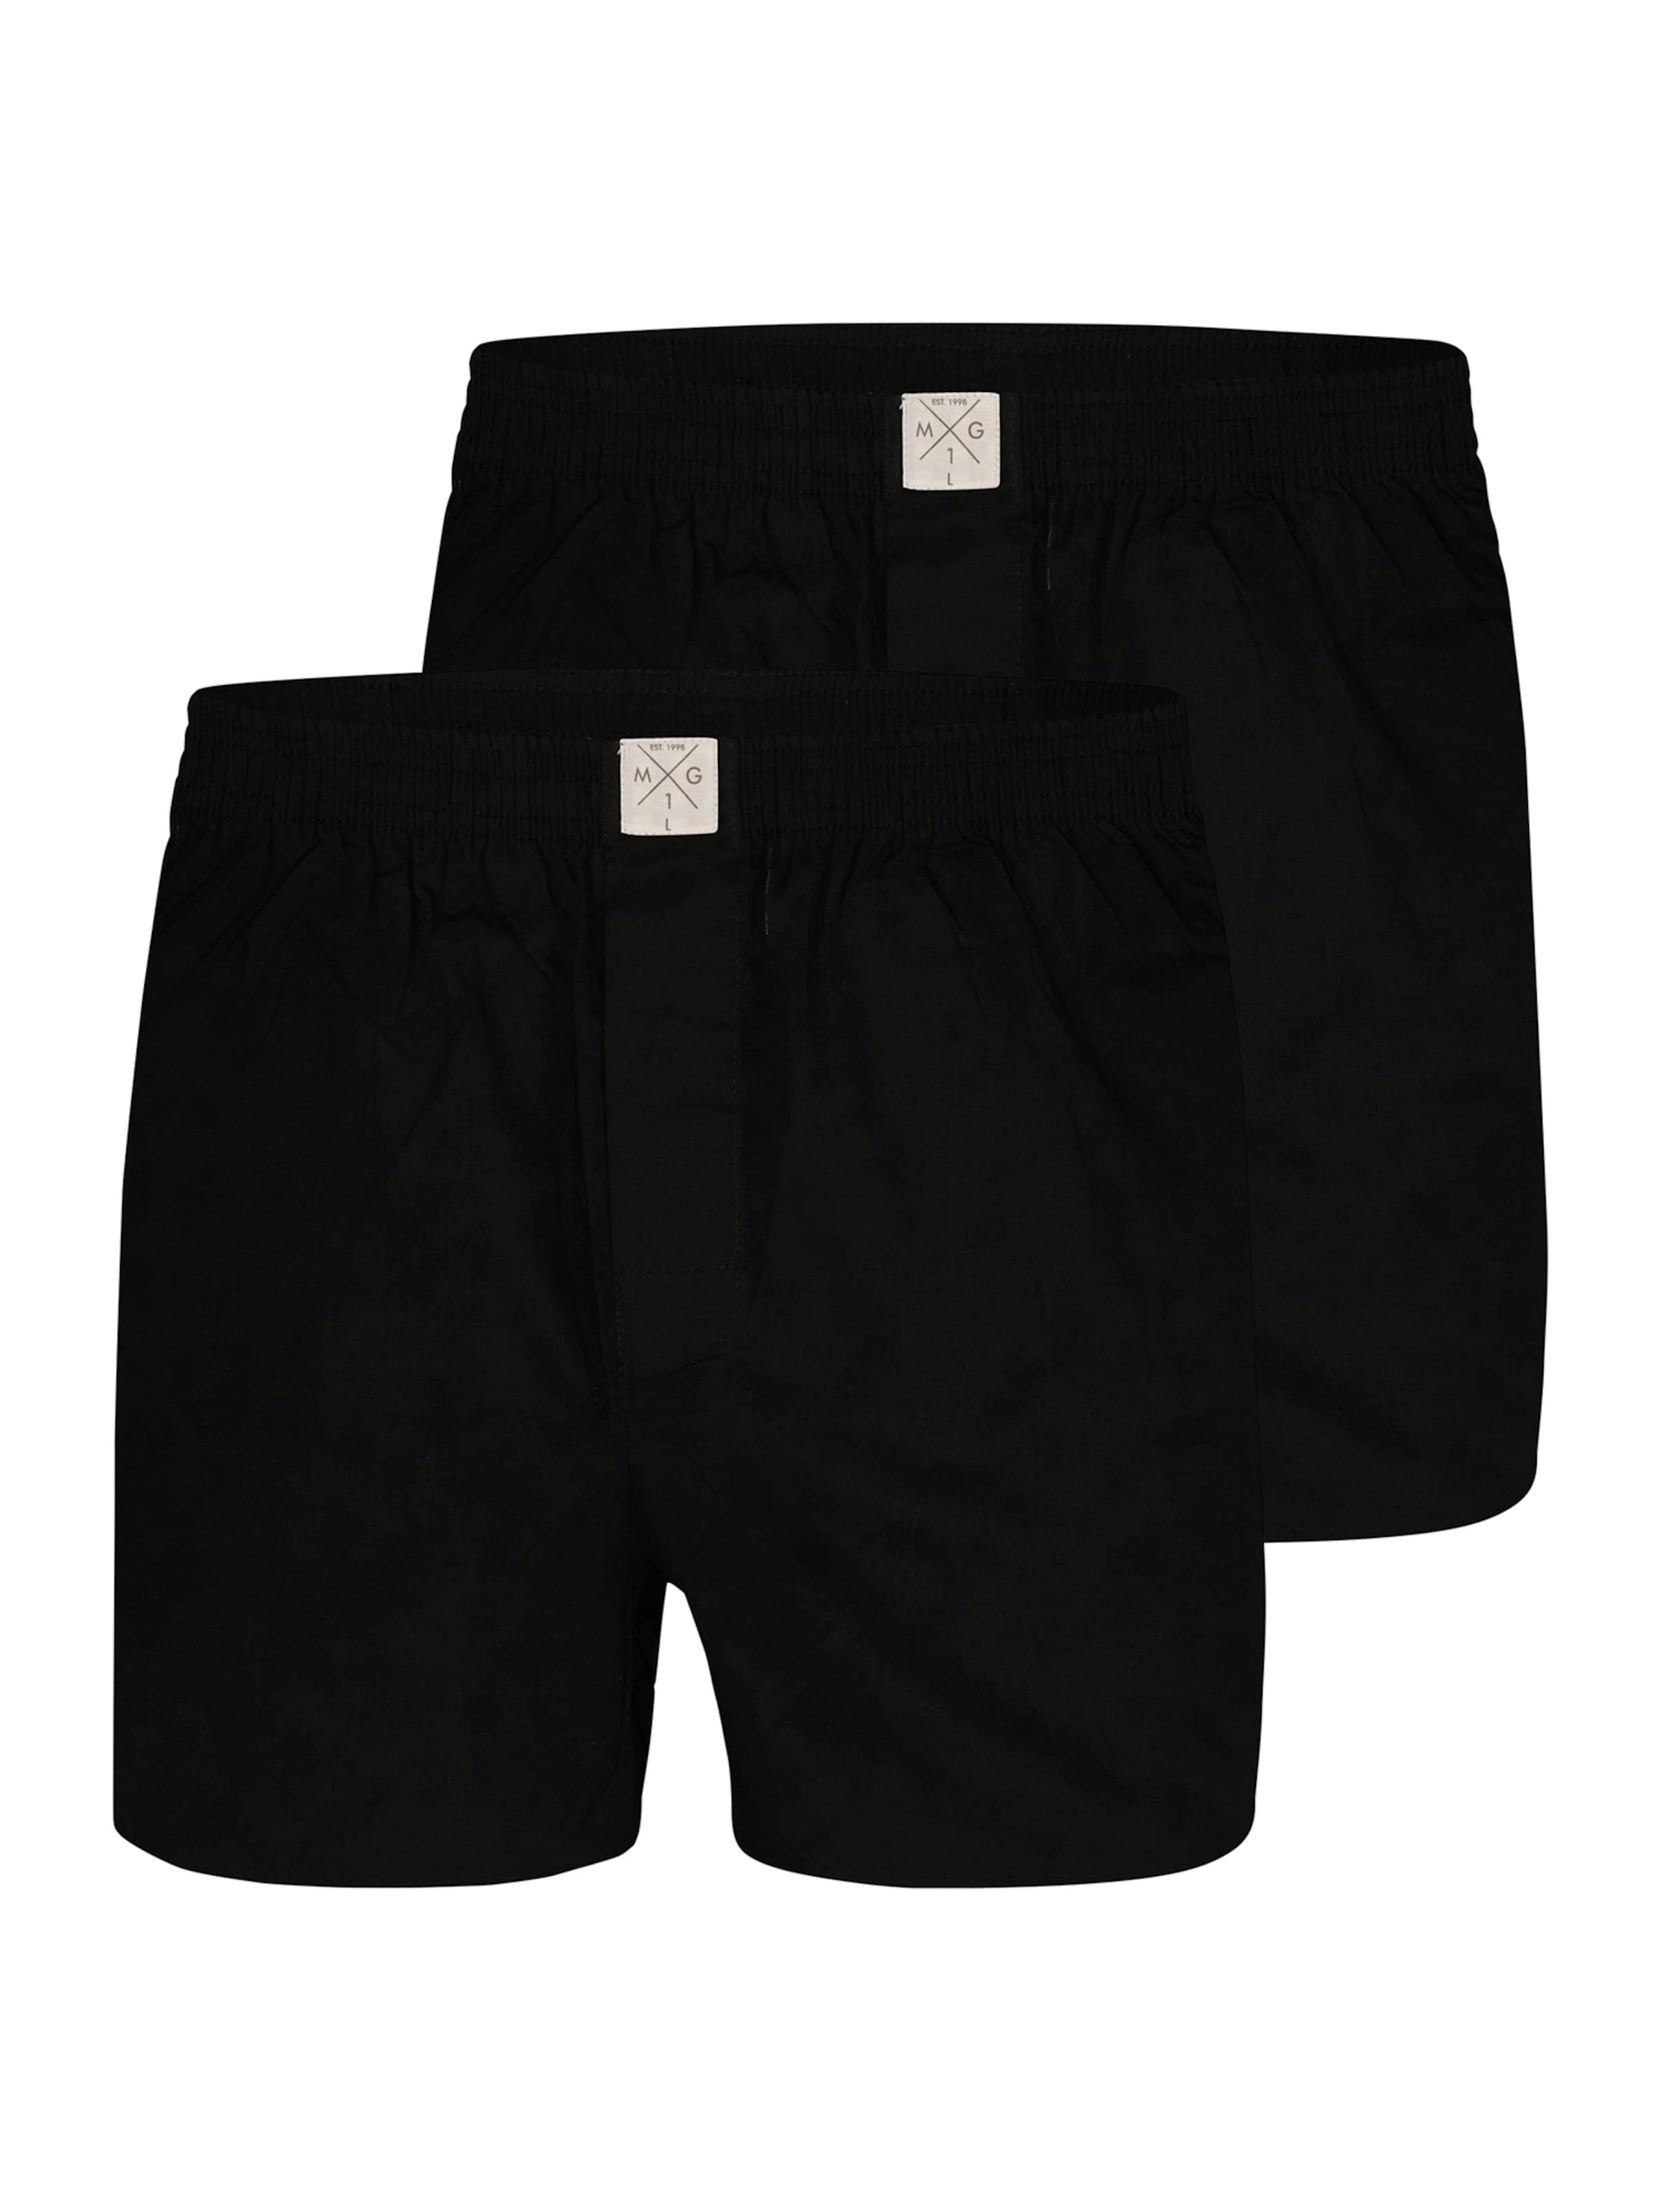 Vêtements Boxers 2-Pack Single Colour Black MG-1 en Noir 